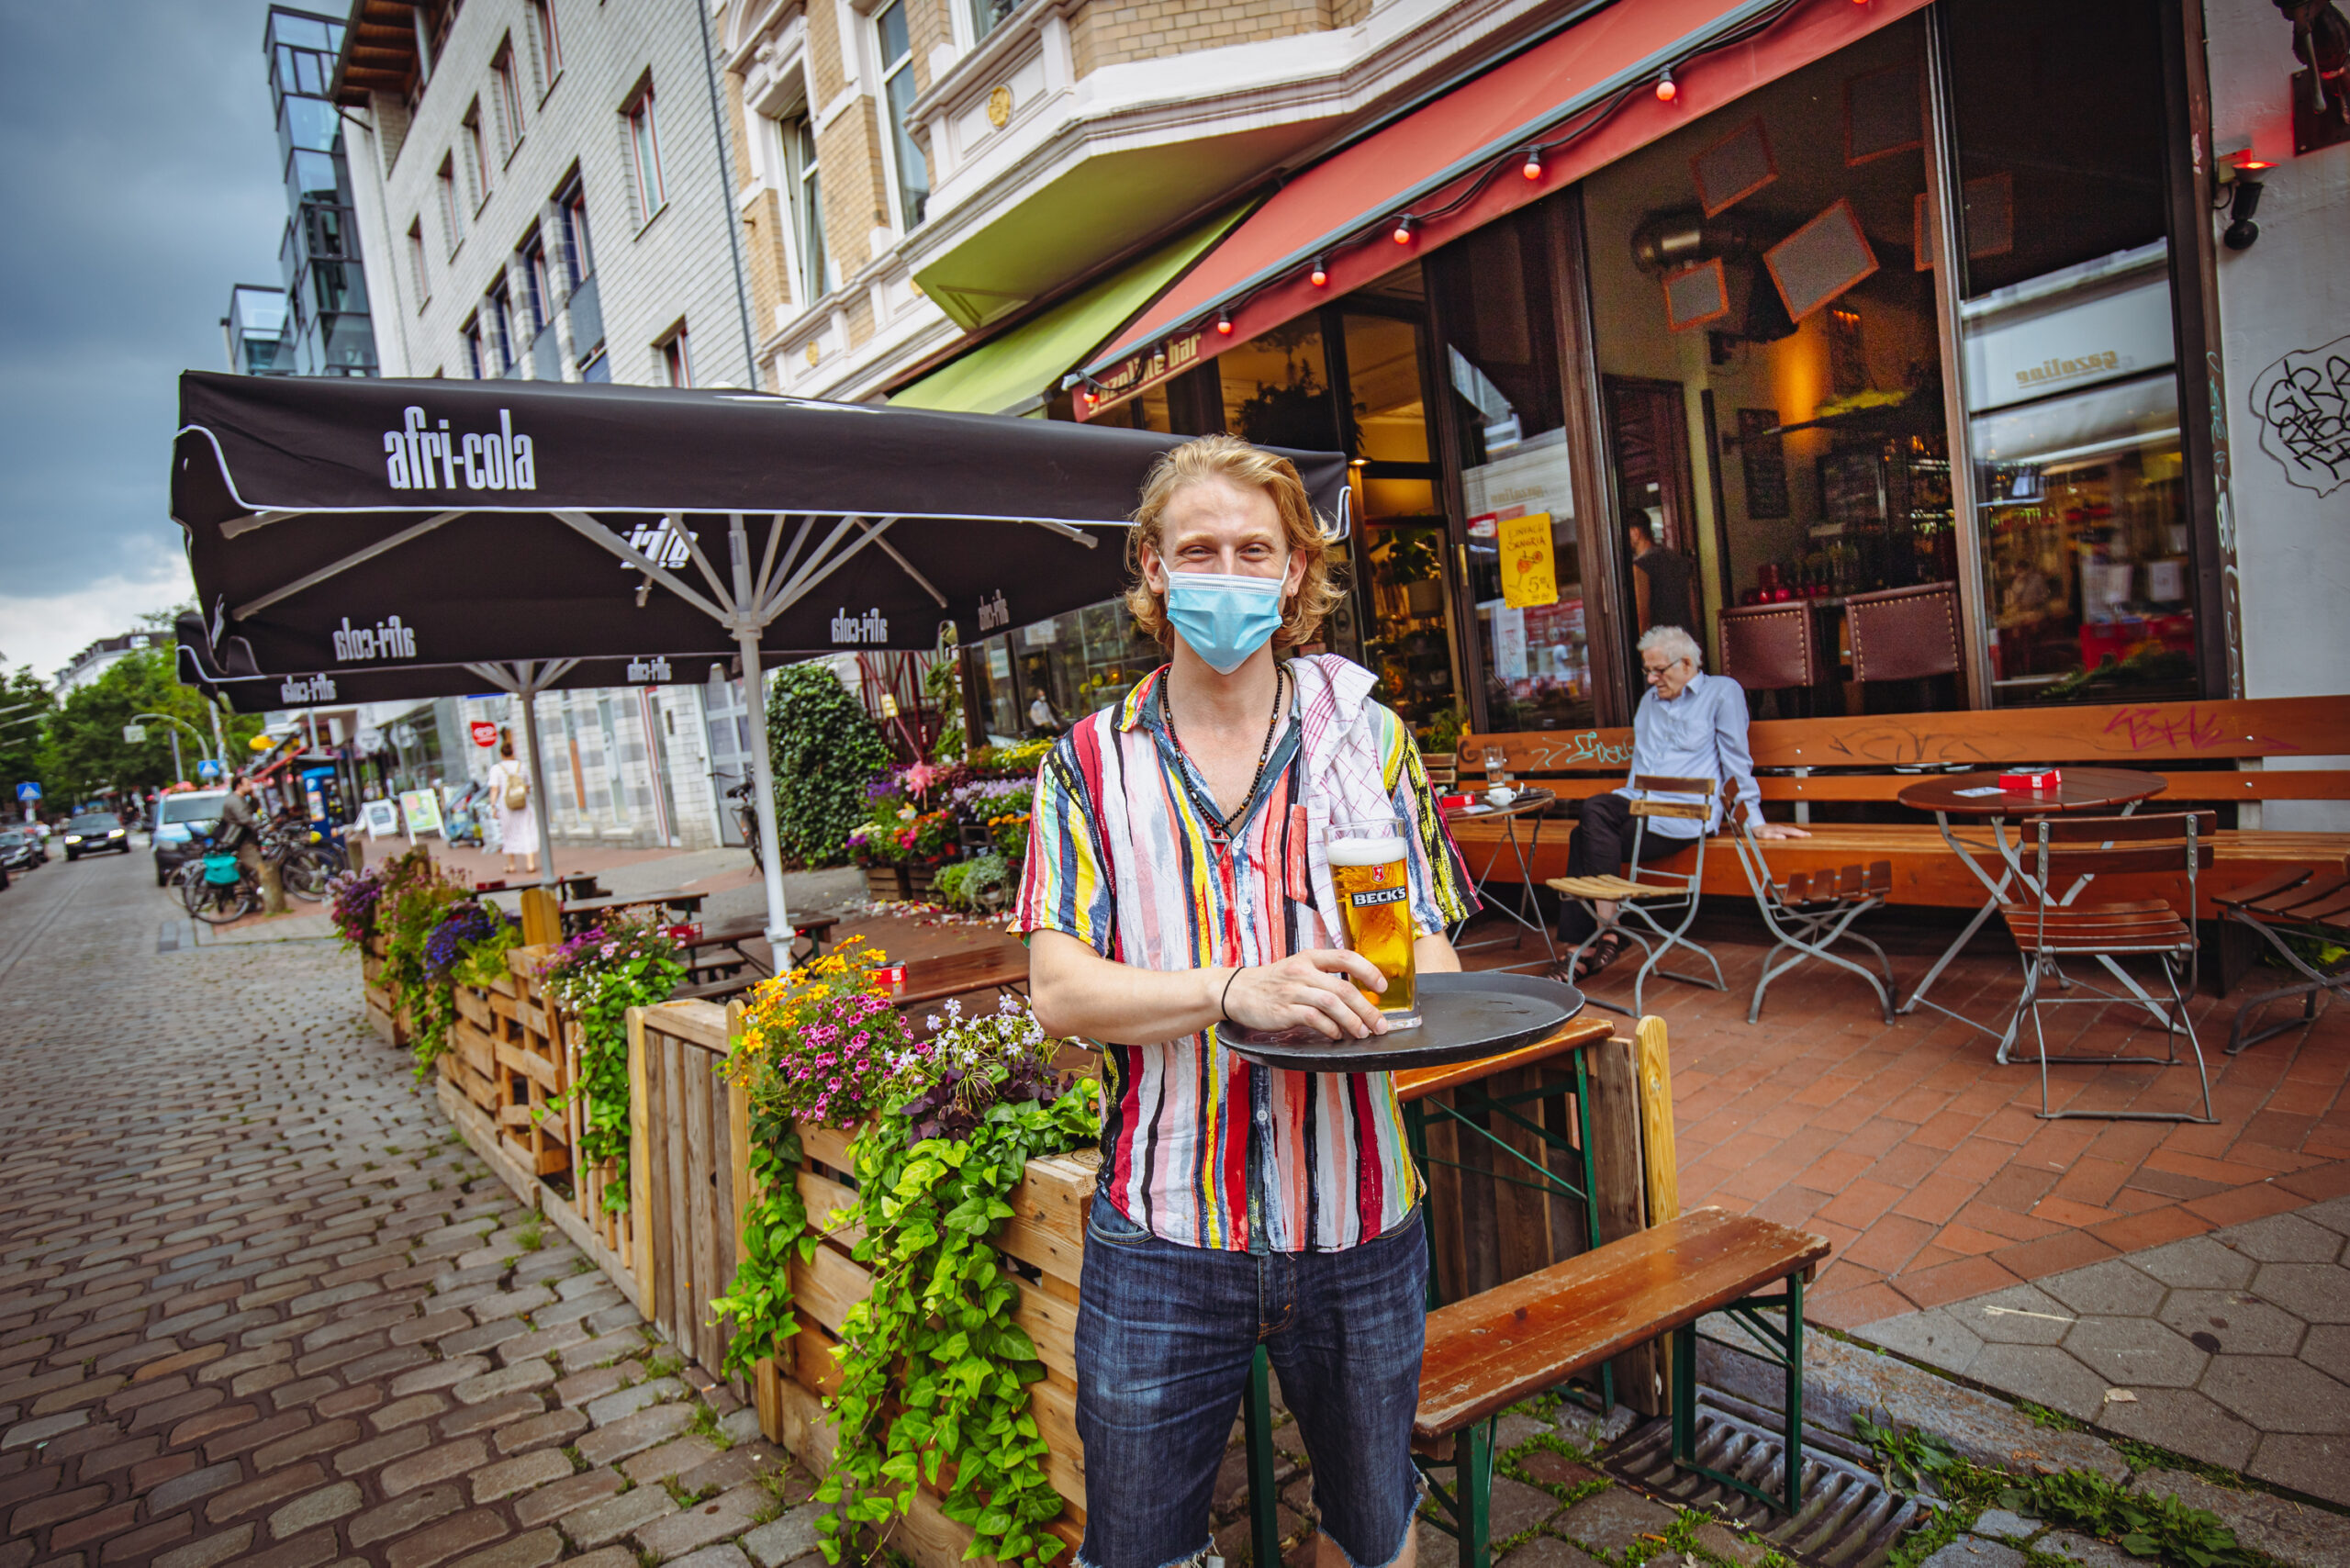 Mehr Platz auf Außengastro statt Parkplätze. So wie hier in der Gazoline-Bar in Ottensen. Barmann Niko (24) freut's.